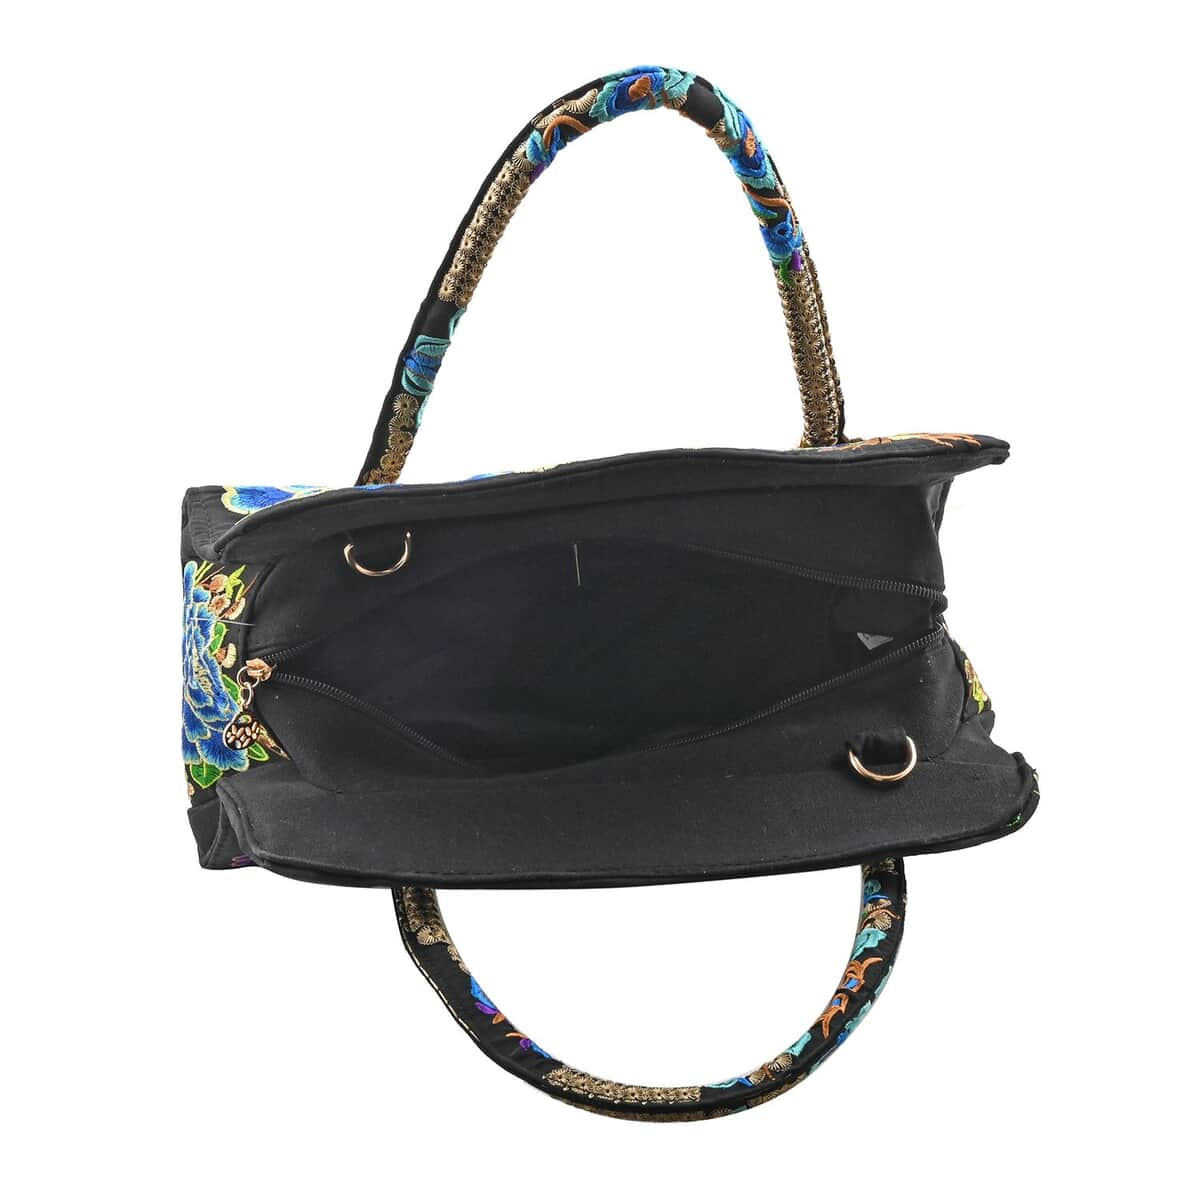 Blue Lotus Flower Embroidered Handbag with Shoulder Strap image number 3